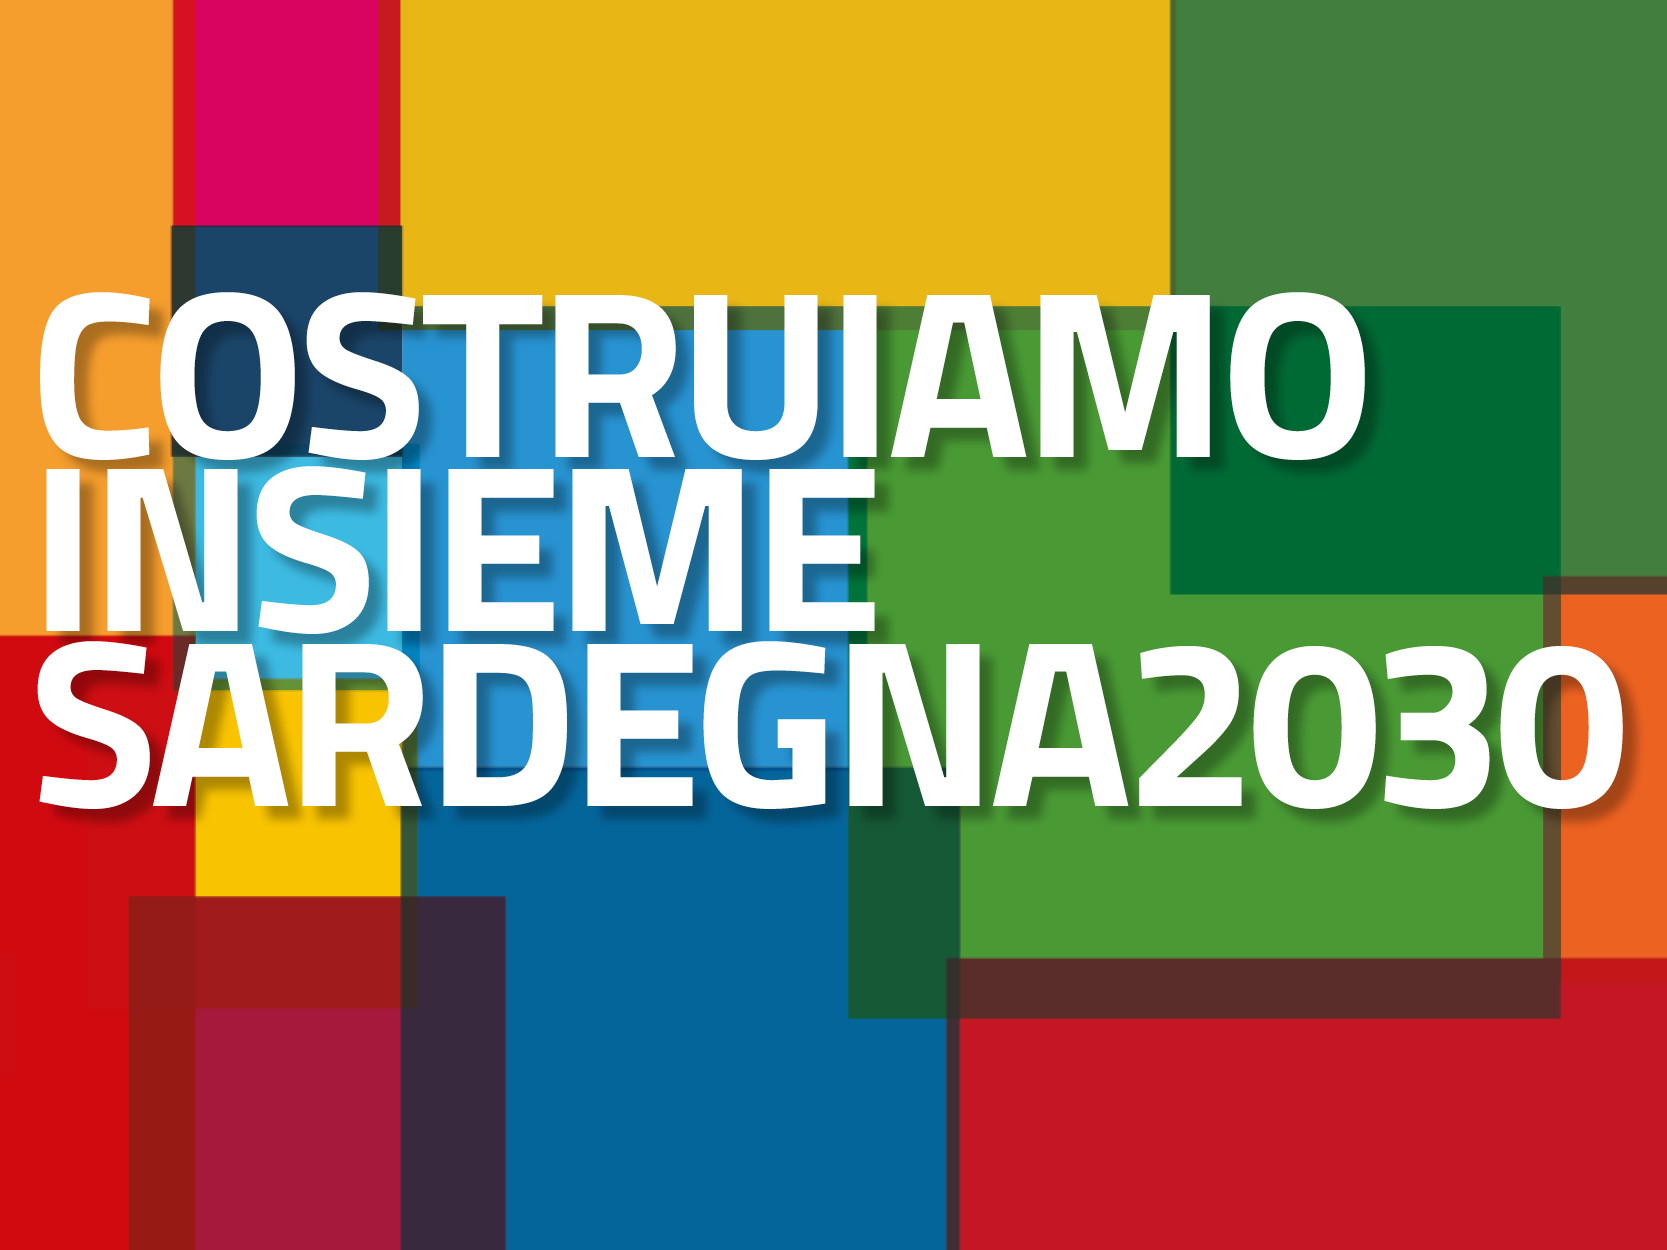 Sardegna2030 - Strategia Regionale per lo Sviluppo Sostenibile